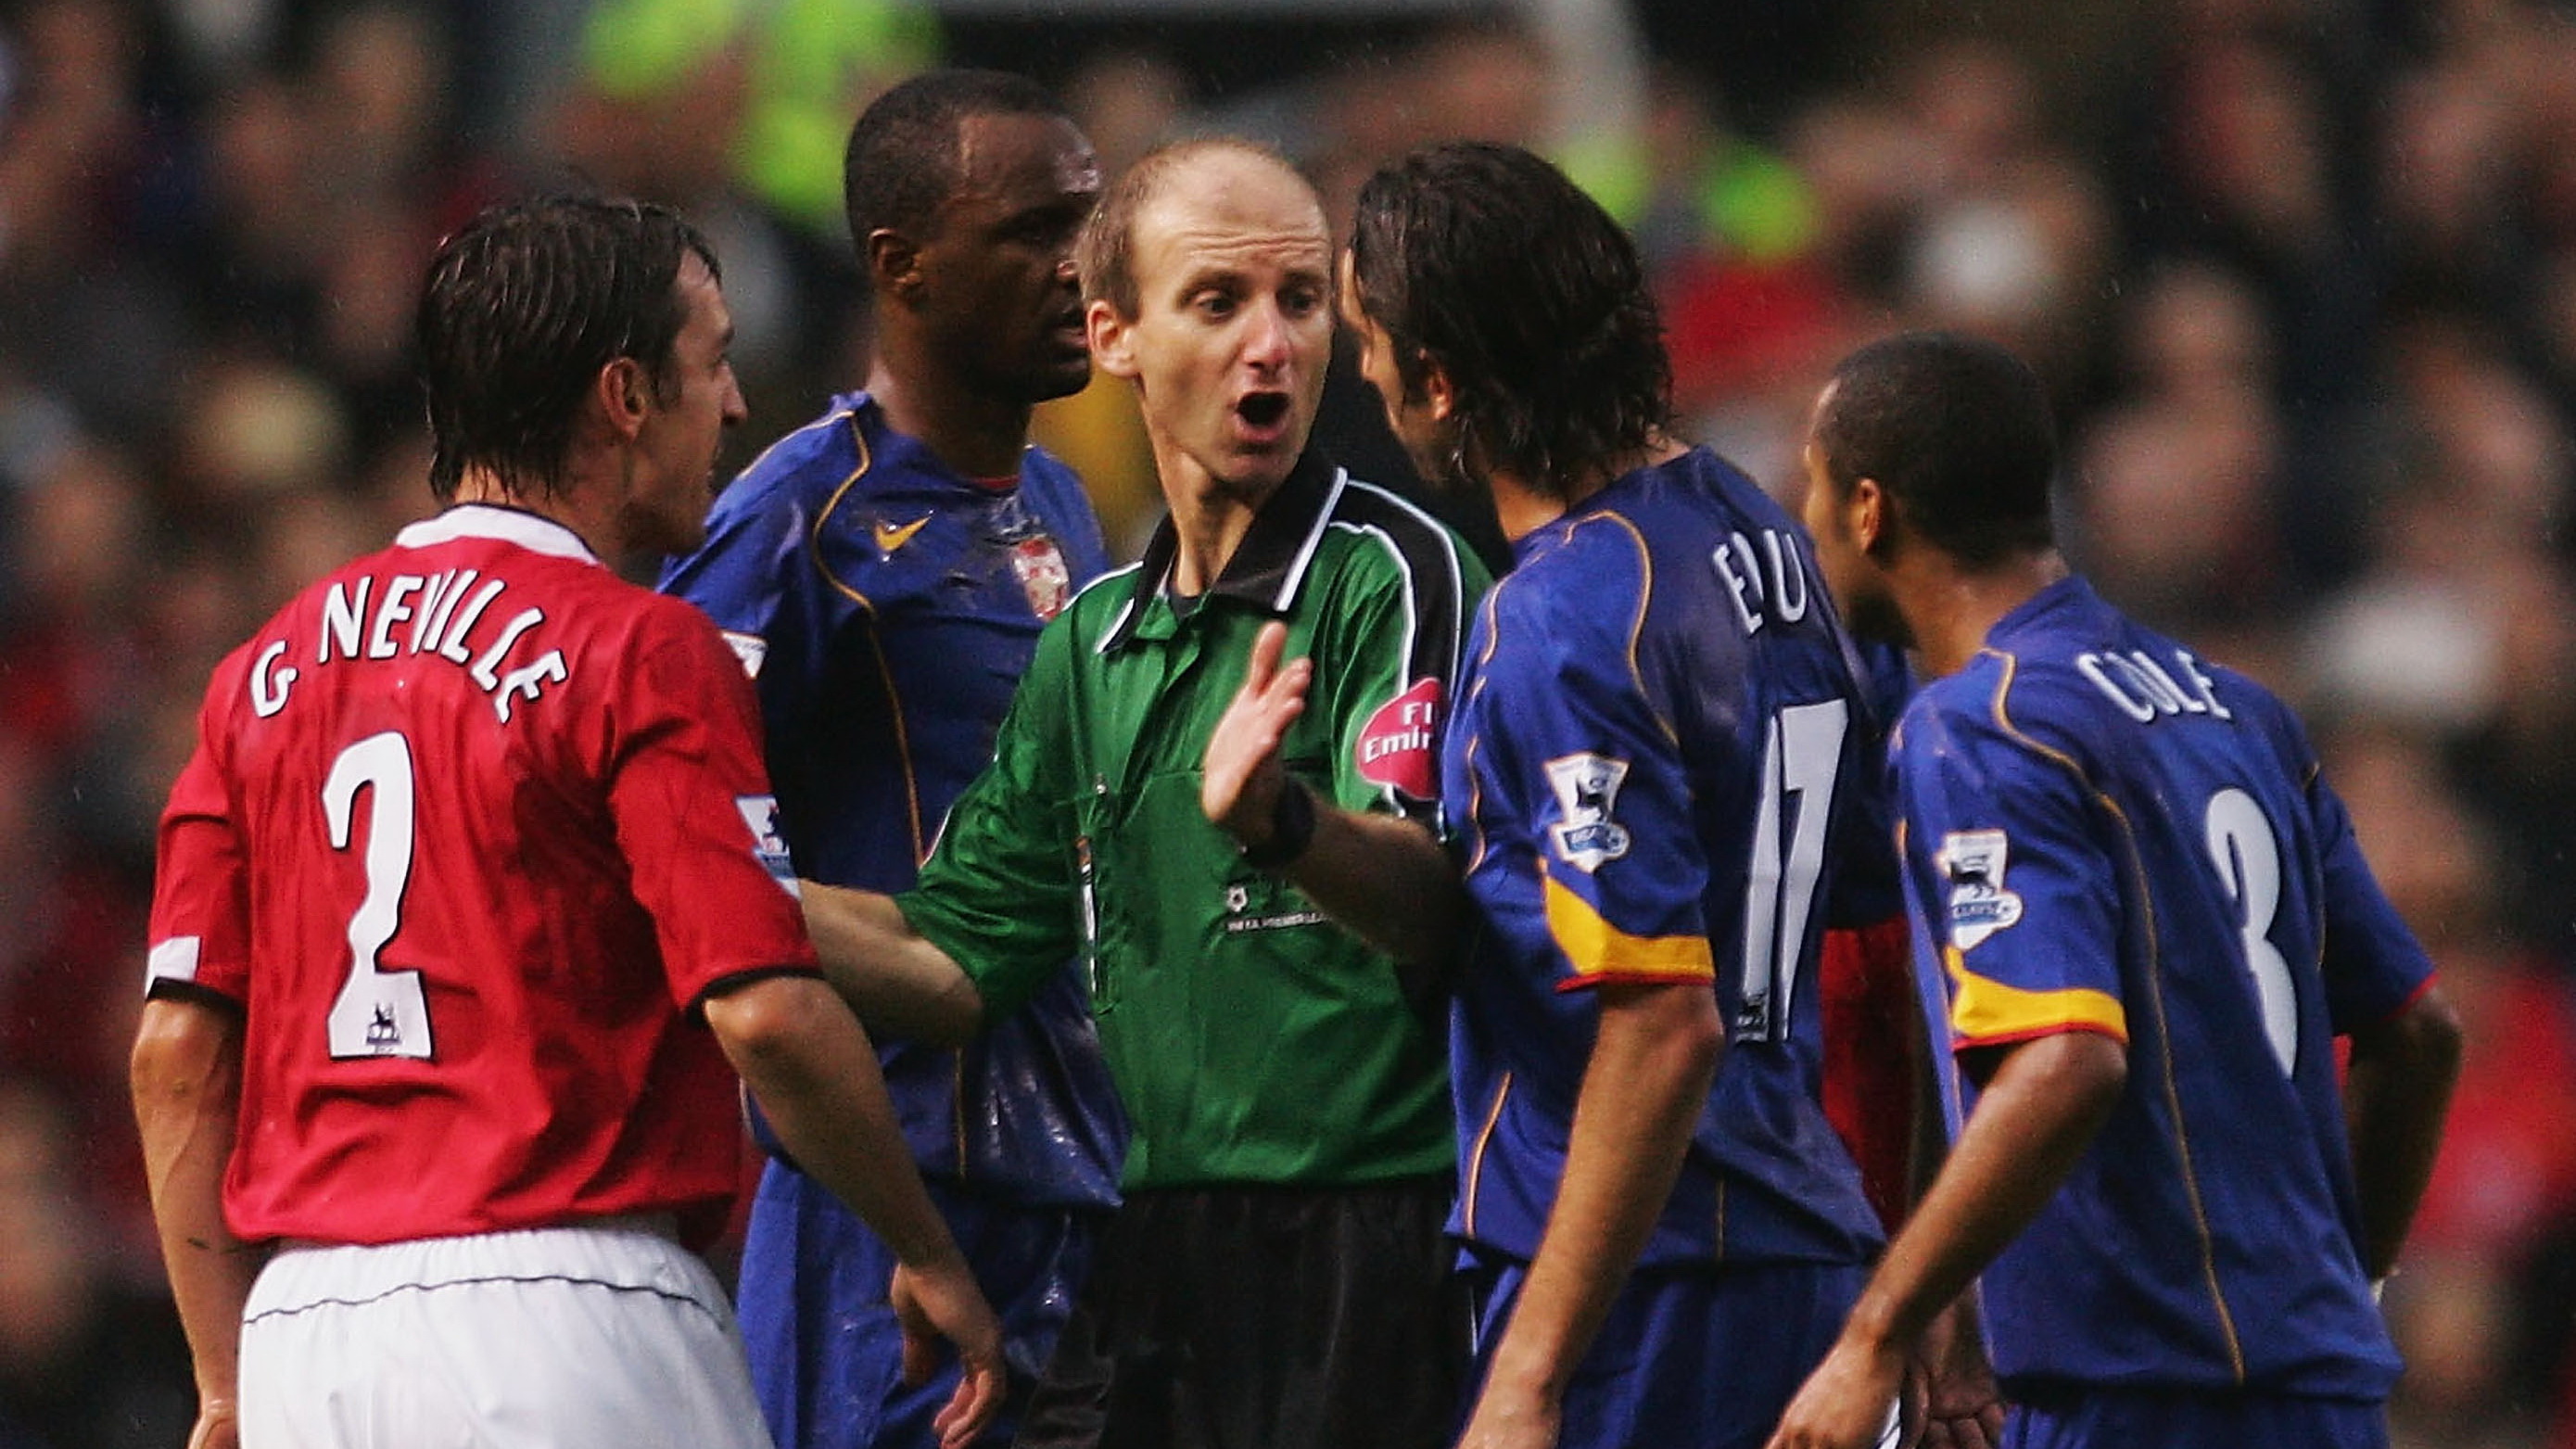 Các cầu thủ Arsenal và M.U có trận cầu căng thẳng khi liên tục đụng độ với nhau trên sân. Ảnh: GOAL.COM